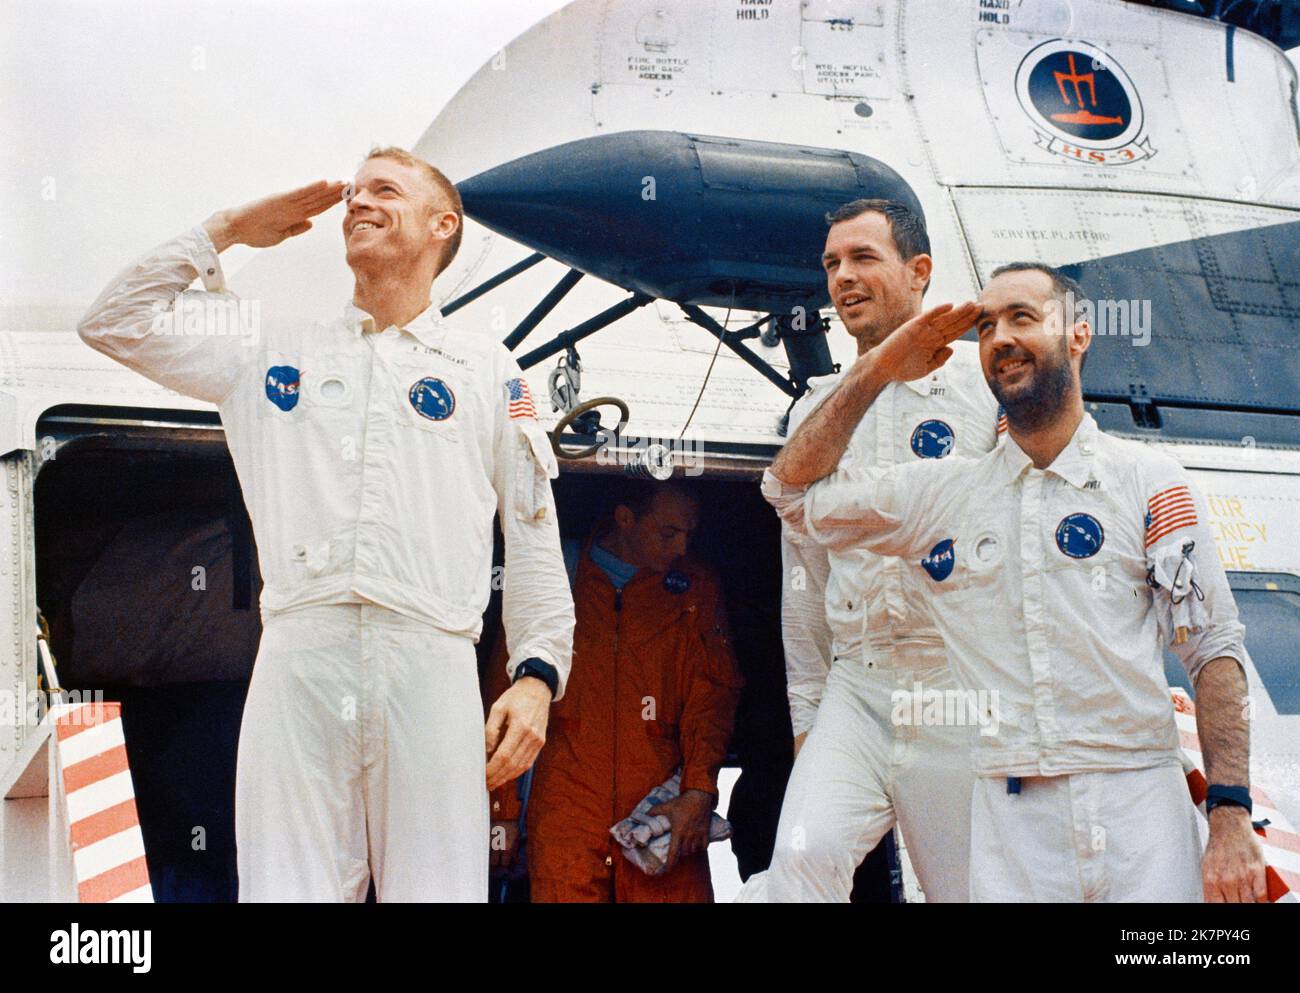 USS Guadalcanal, USA. 18. Oktober 2022. NASA Apollo 9 Astronauten, von links nach rechts, Russell Schweickart, David Scott und James McDivitt grüßen, als sie an Bord der USS Guadalcanal nach Splashdown im Atlantischen Ozean am 13. März 1969 vor der Küste Floridas ankommen. McDivitt kommandierte die erste Gemini-Weltraummission und kommandierte Apollo 9 während des ersten mitbemundeten Orbitalflugs eines Mondmoduls, der am 15. Oktober 2022 im Alter von 93 Jahren starb. Quelle: NASA/NASA/Alamy Live News Stockfoto